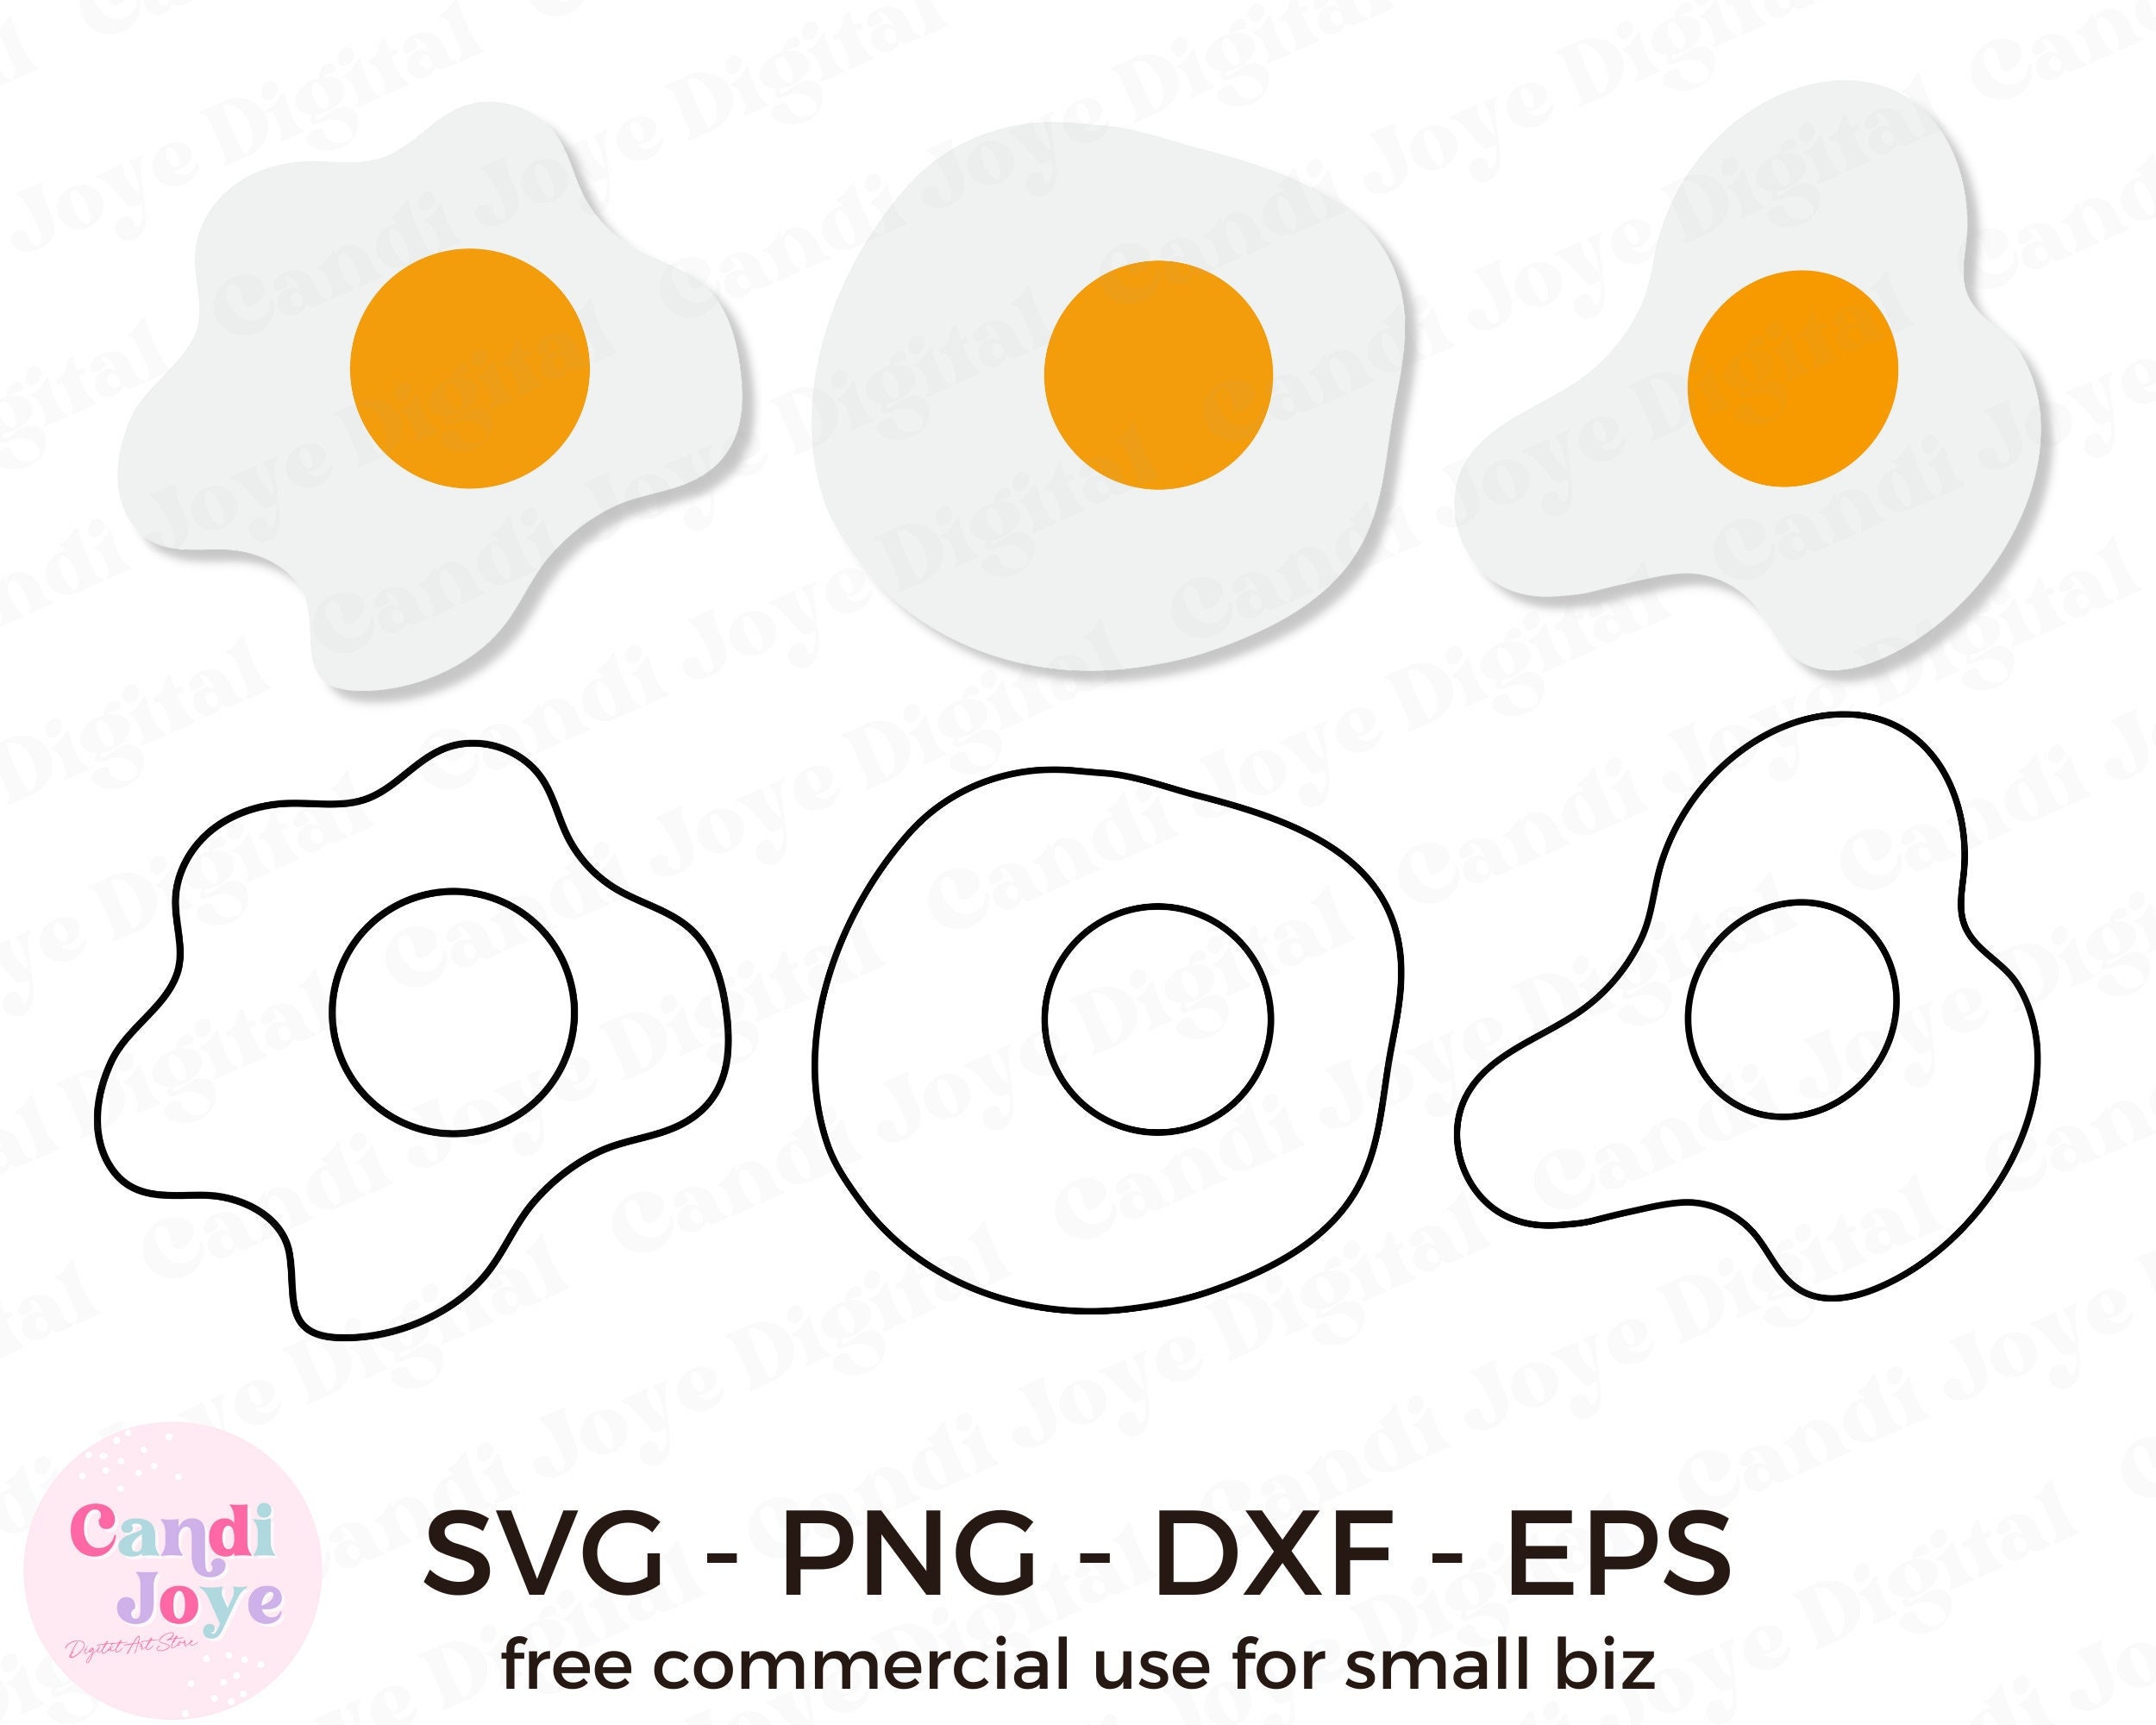 Fried egg png images